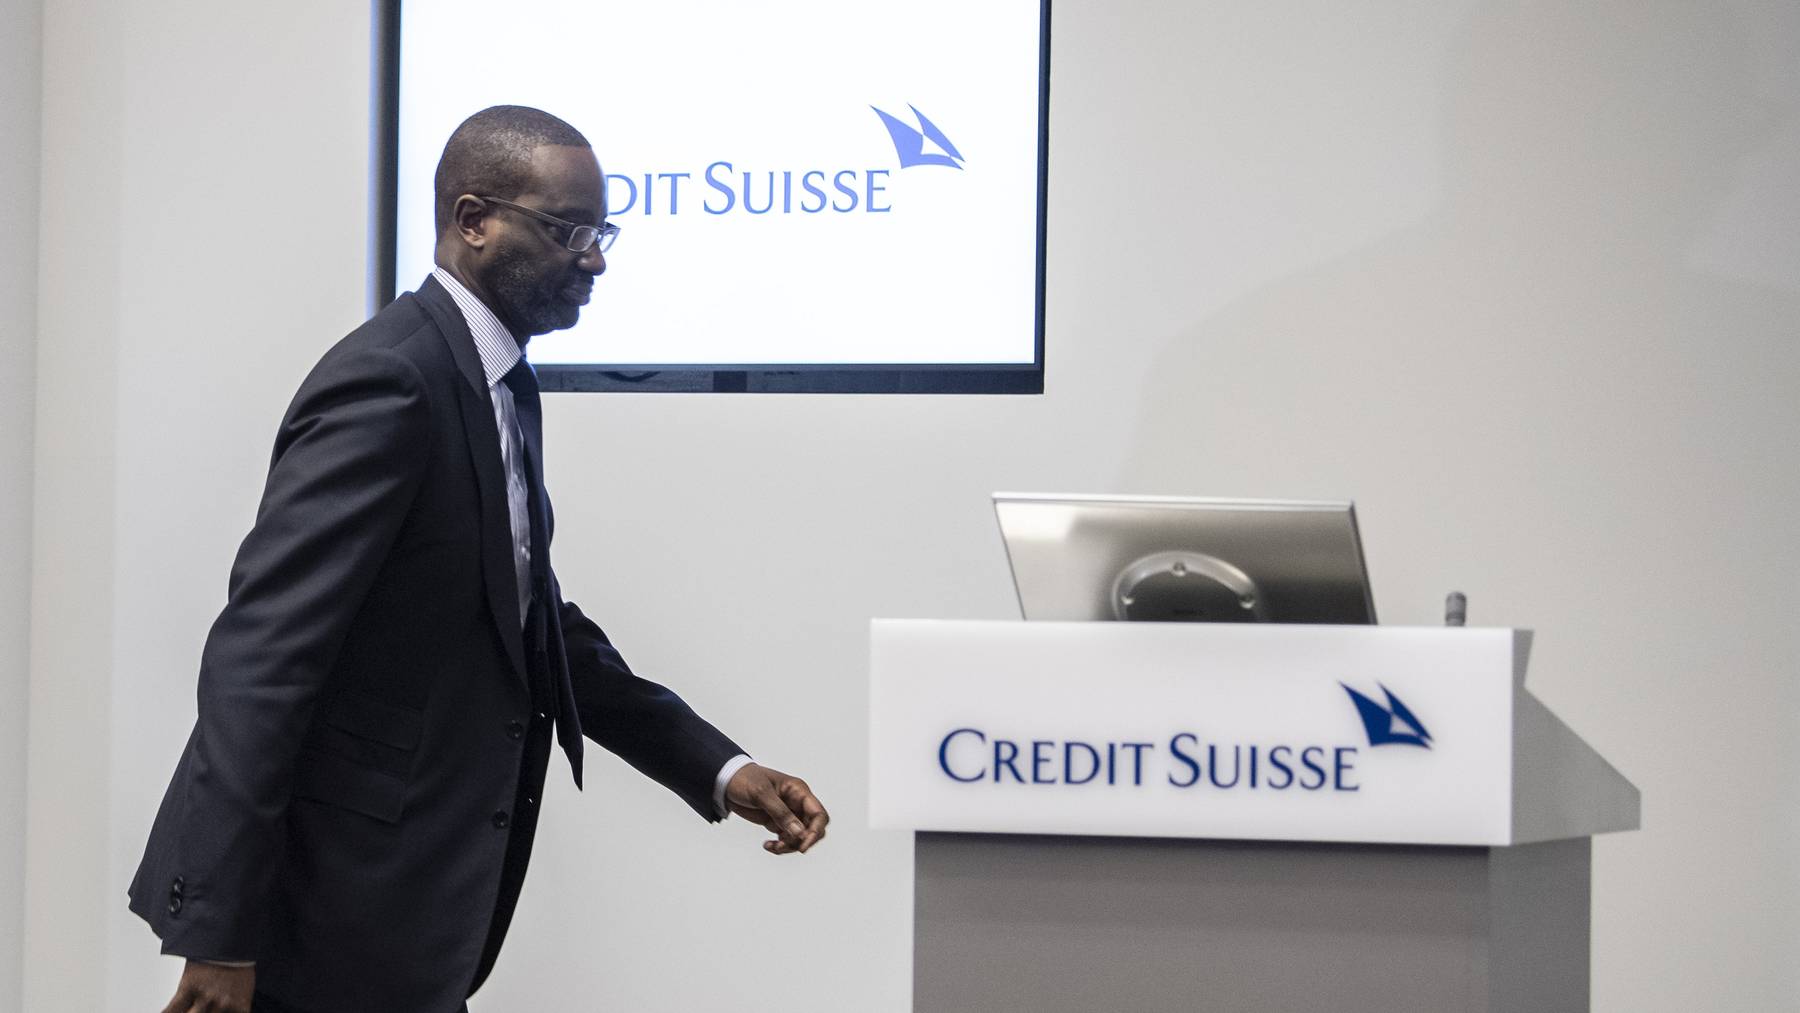 Die Credit Suisse hat 2019 Negativschlagzeilen gemacht. Für den früheren CEO Tidjane Thiam hat das eine Lohneinbusse zur Folge.